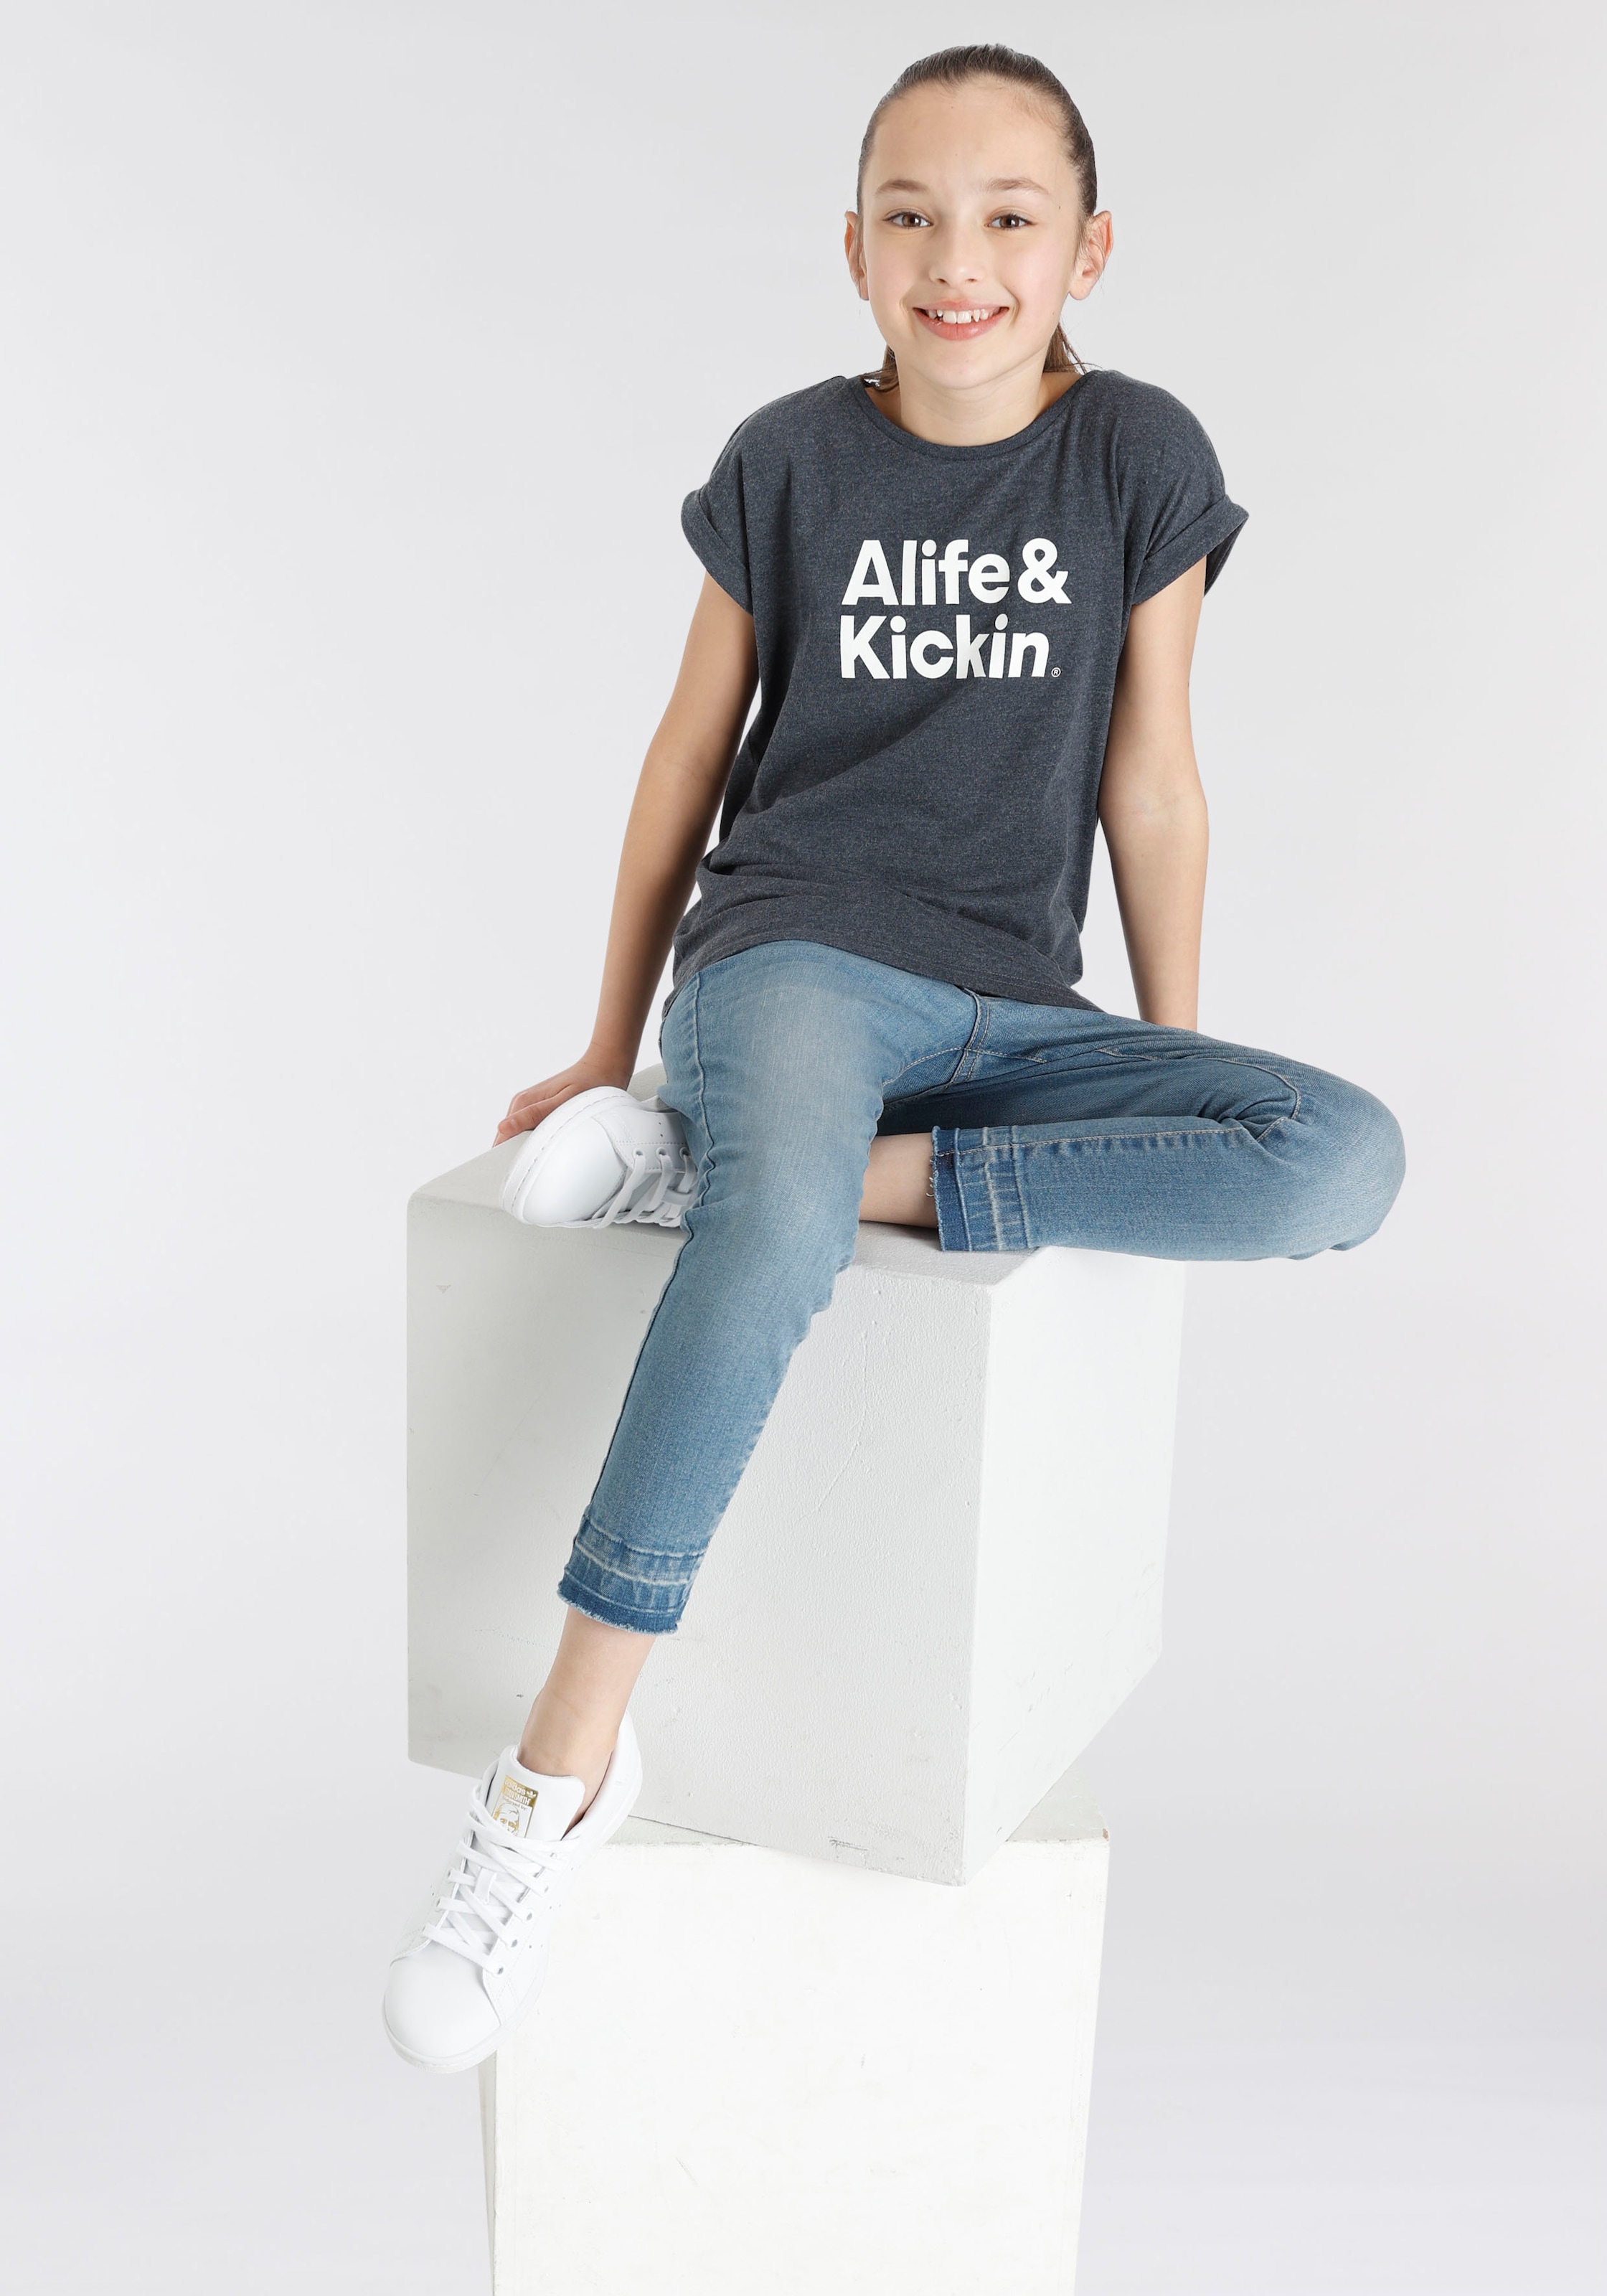 Logo Alife NEUE bestellen Druck«, online Kickin BAUR & für T-Shirt Alife Kids. & Kickin »mit MARKE! |